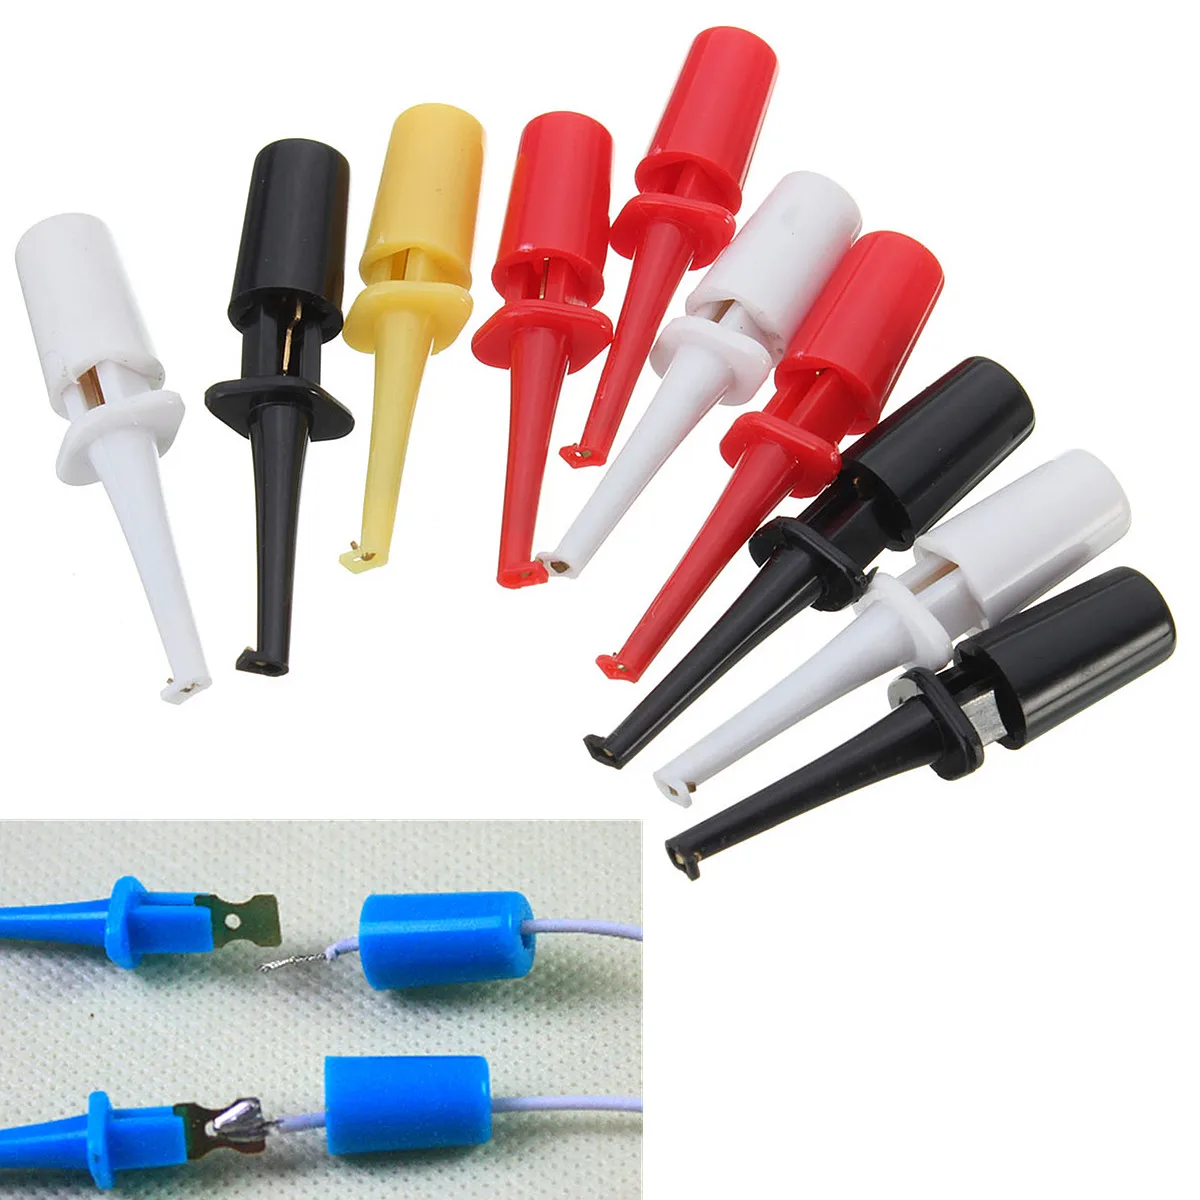 10x Multimeter Lead Wire Kit Test Hook Clip Grabbers SMT O9 Test XTS SMD Z1R5 